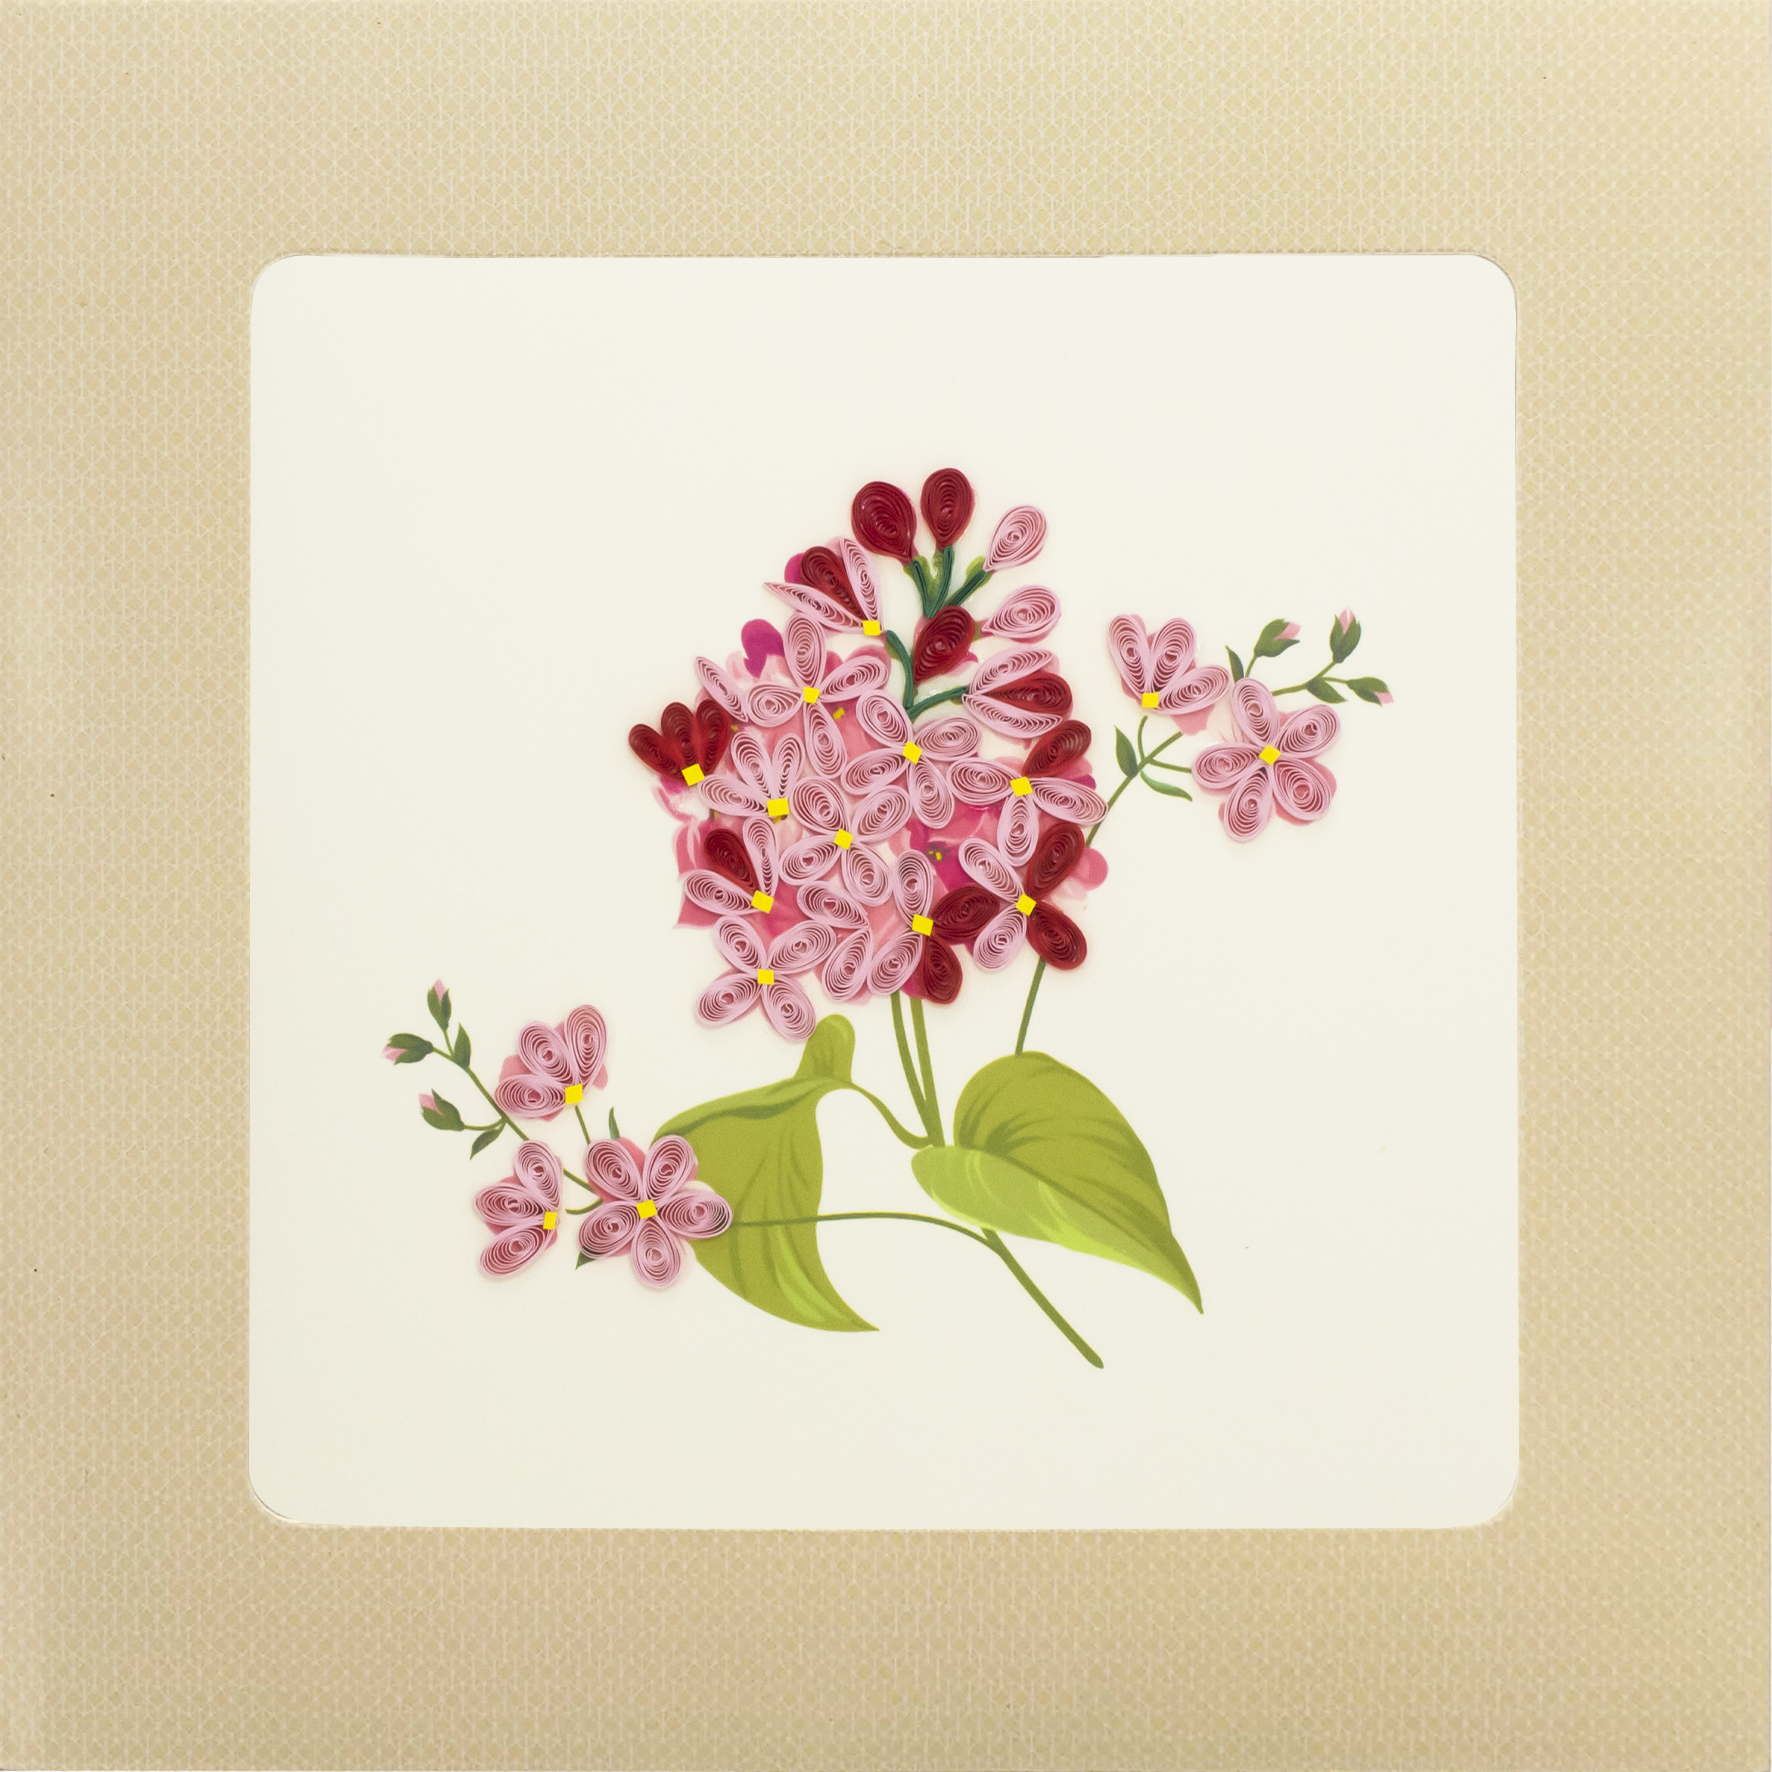 Thiệp Handmade - Thiệp Hoa hồng nhí nghệ thuật giấy xoắn (Quilling Card) - Tặng Kèm Khung Giấy Để Bàn - Thiệp chúc mừng sinh nhật, kỷ niệm, tình yêu, cảm ơn…